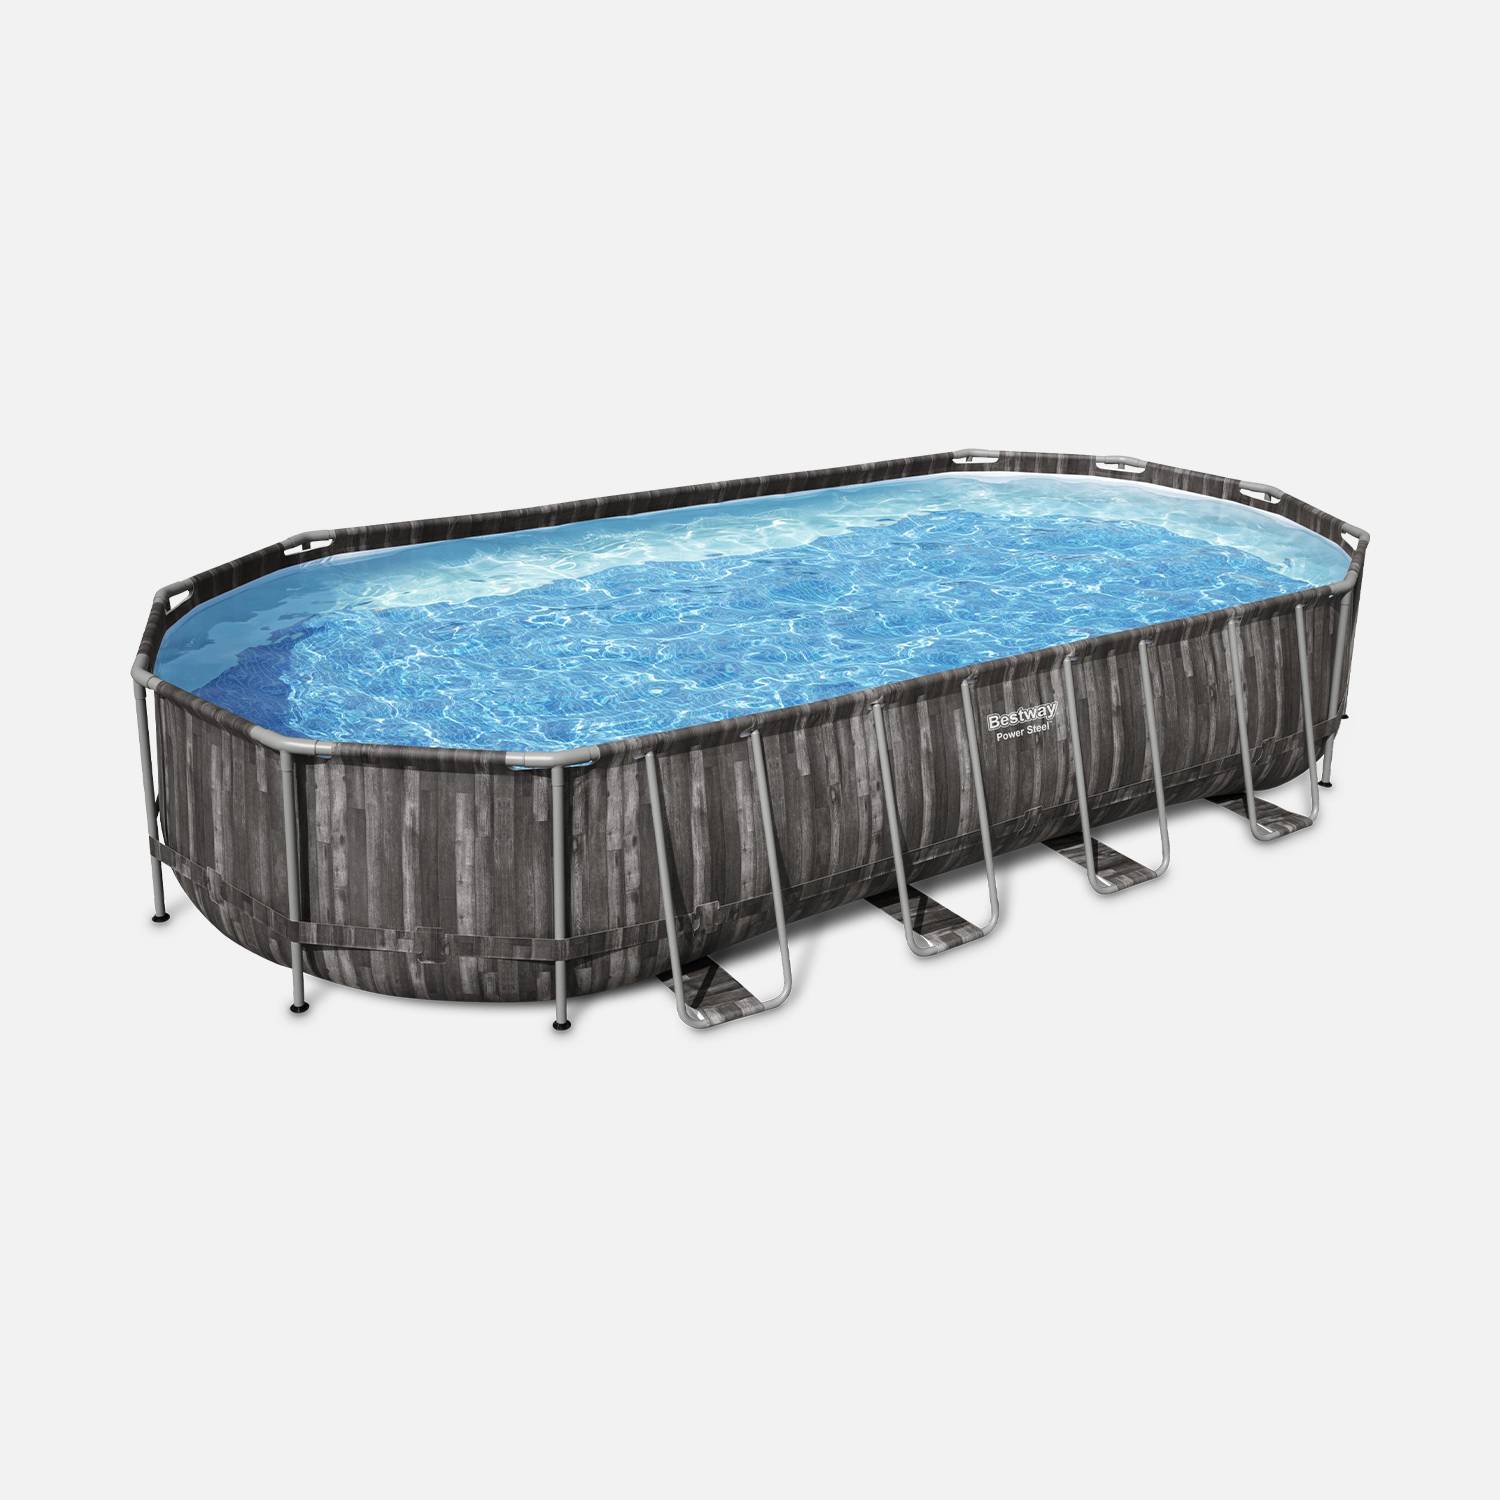 Kit piscine géante complet BESTWAY – Spinelle – piscine ovale tubulaire 7x3 m motif aspect bois, pompe de filtration, échelle, bâche de protection, diffuseur ChemConnect Photo2